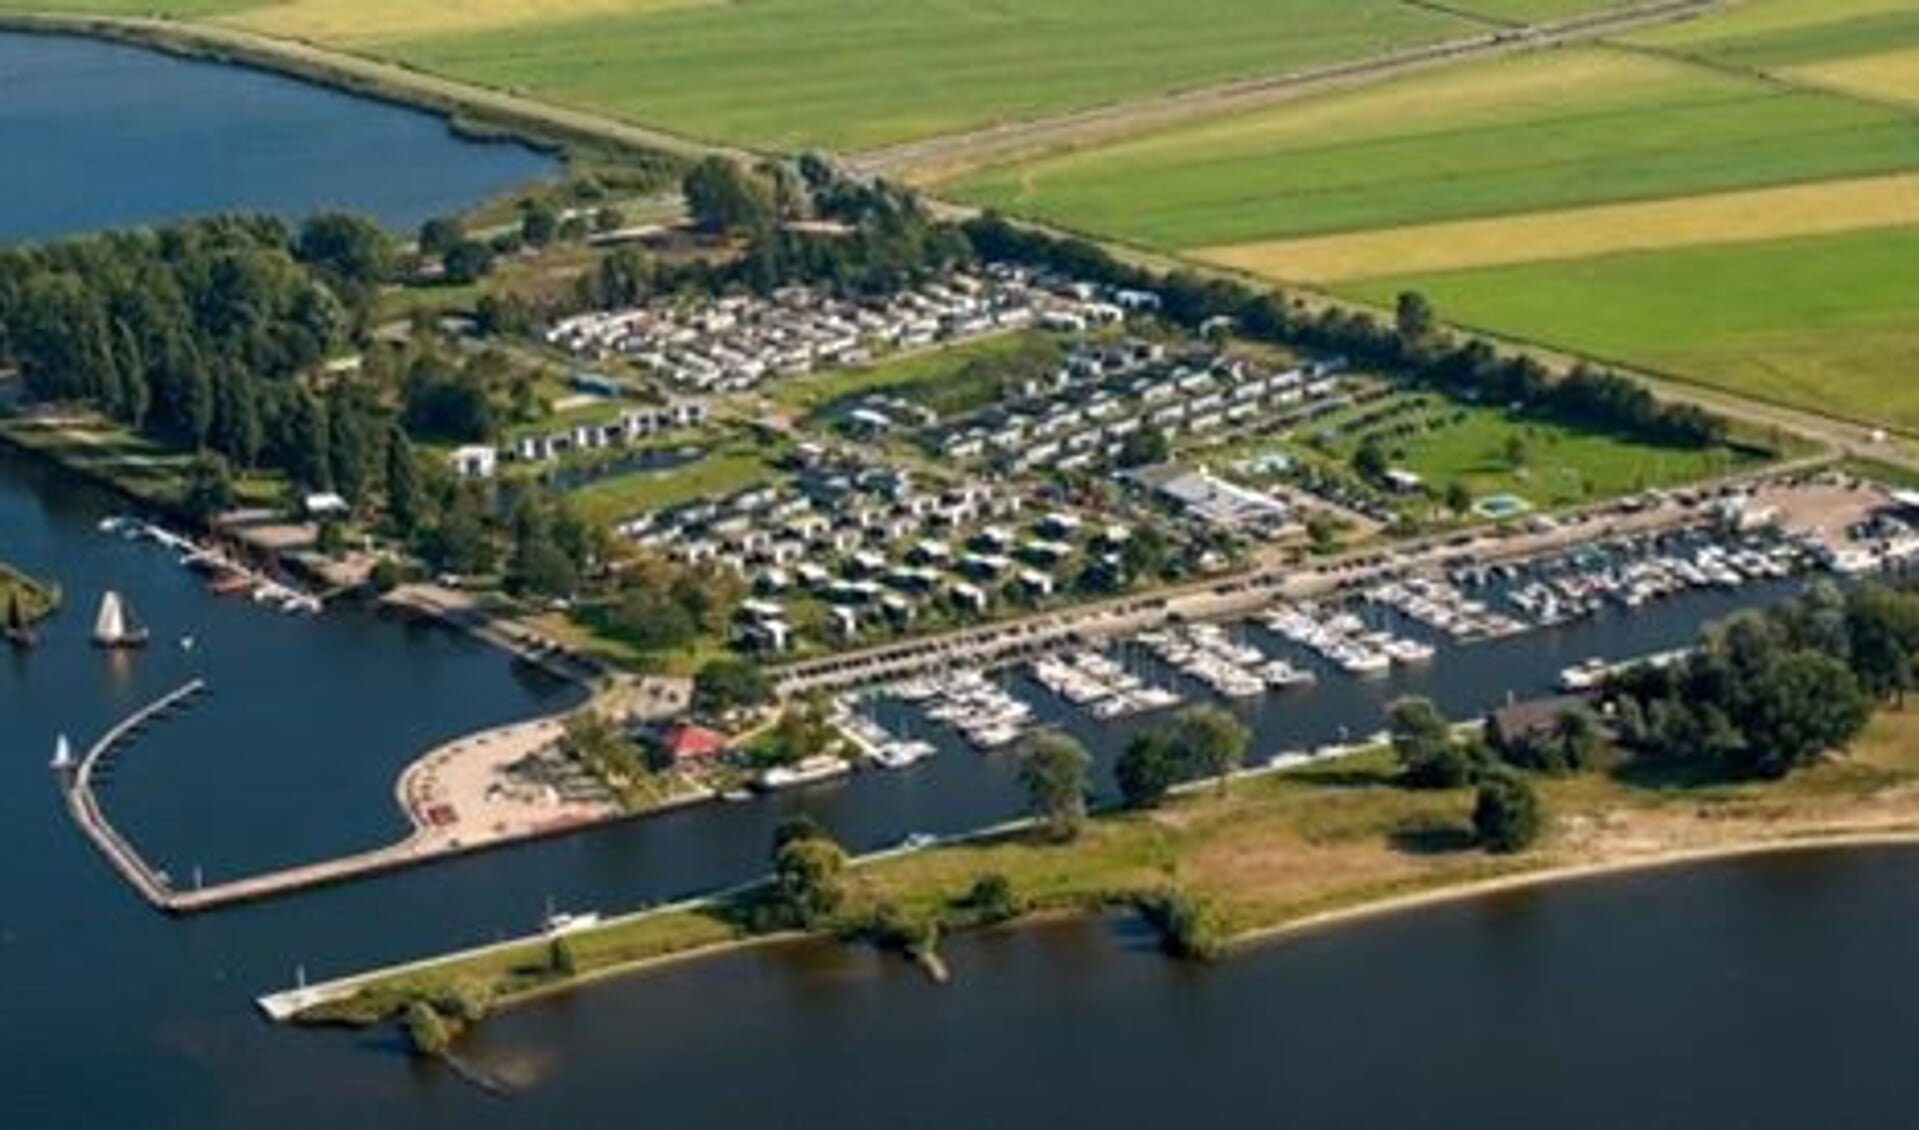 Ook Droompark Bad Hulckesteijn in Nijkerk is overgenomen door EuroParcs.